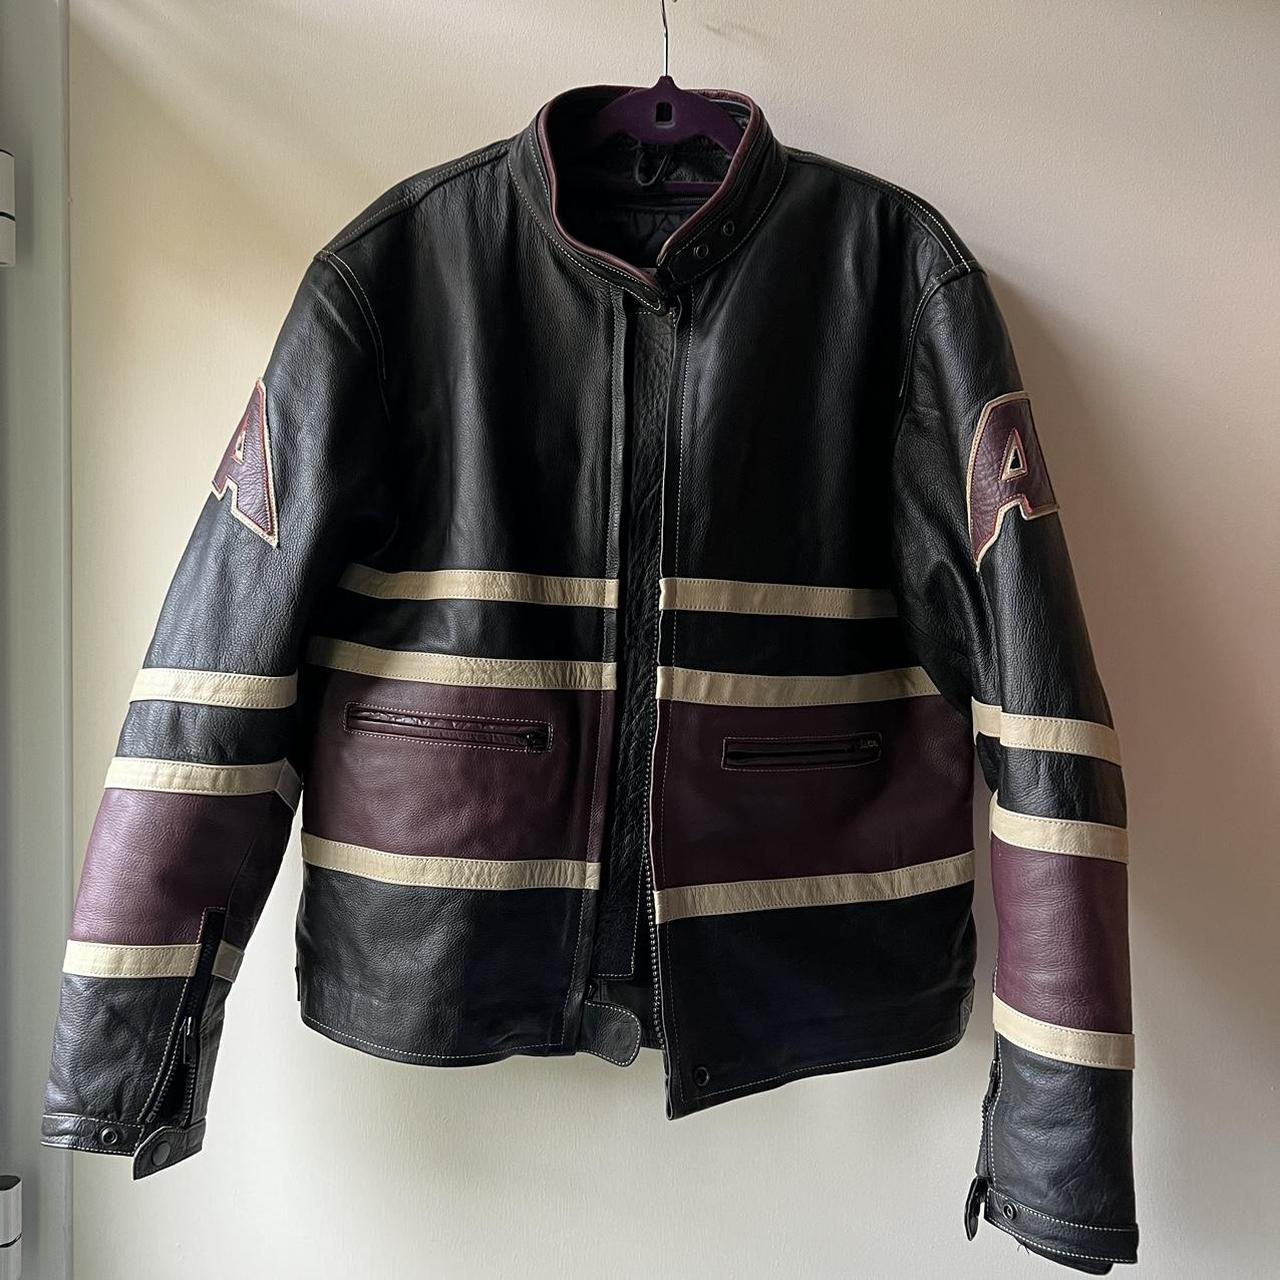 Vintage leather motorcycle jacket 🔥 SOO COOL goes... - Depop